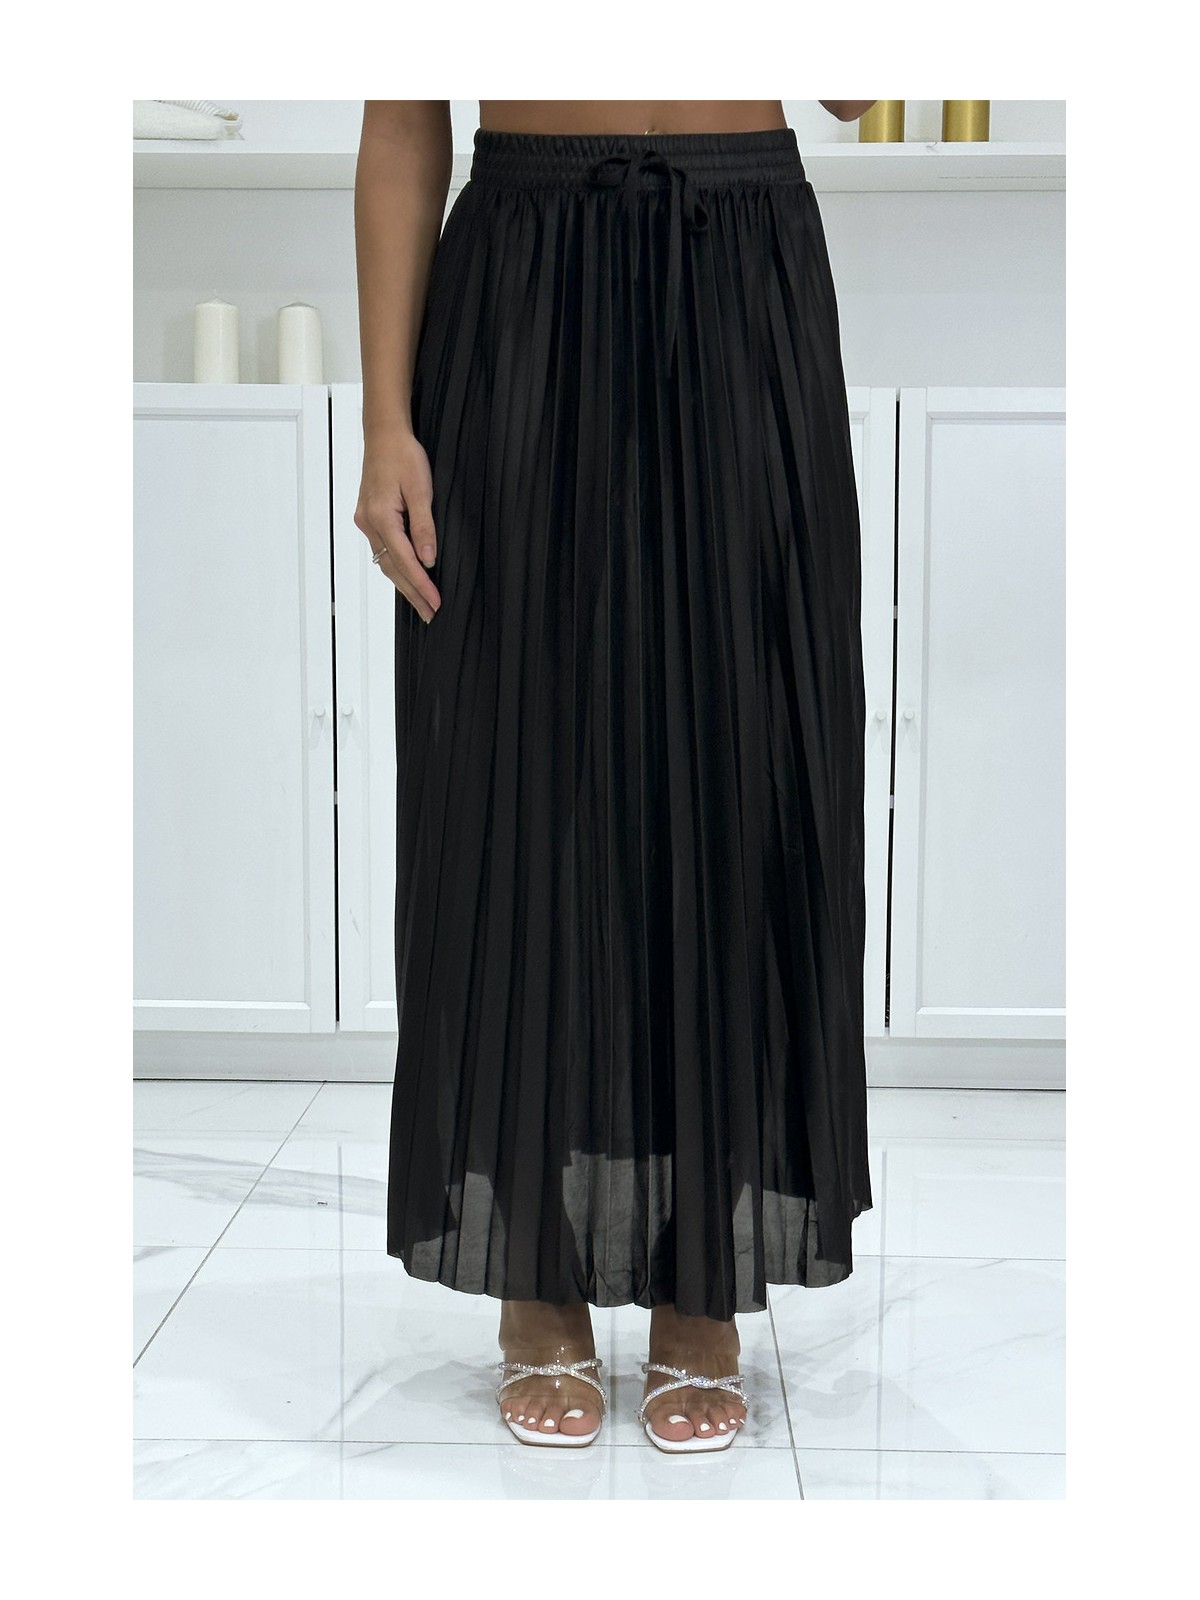 Longue jupe plissé satiné noire très chic - 3